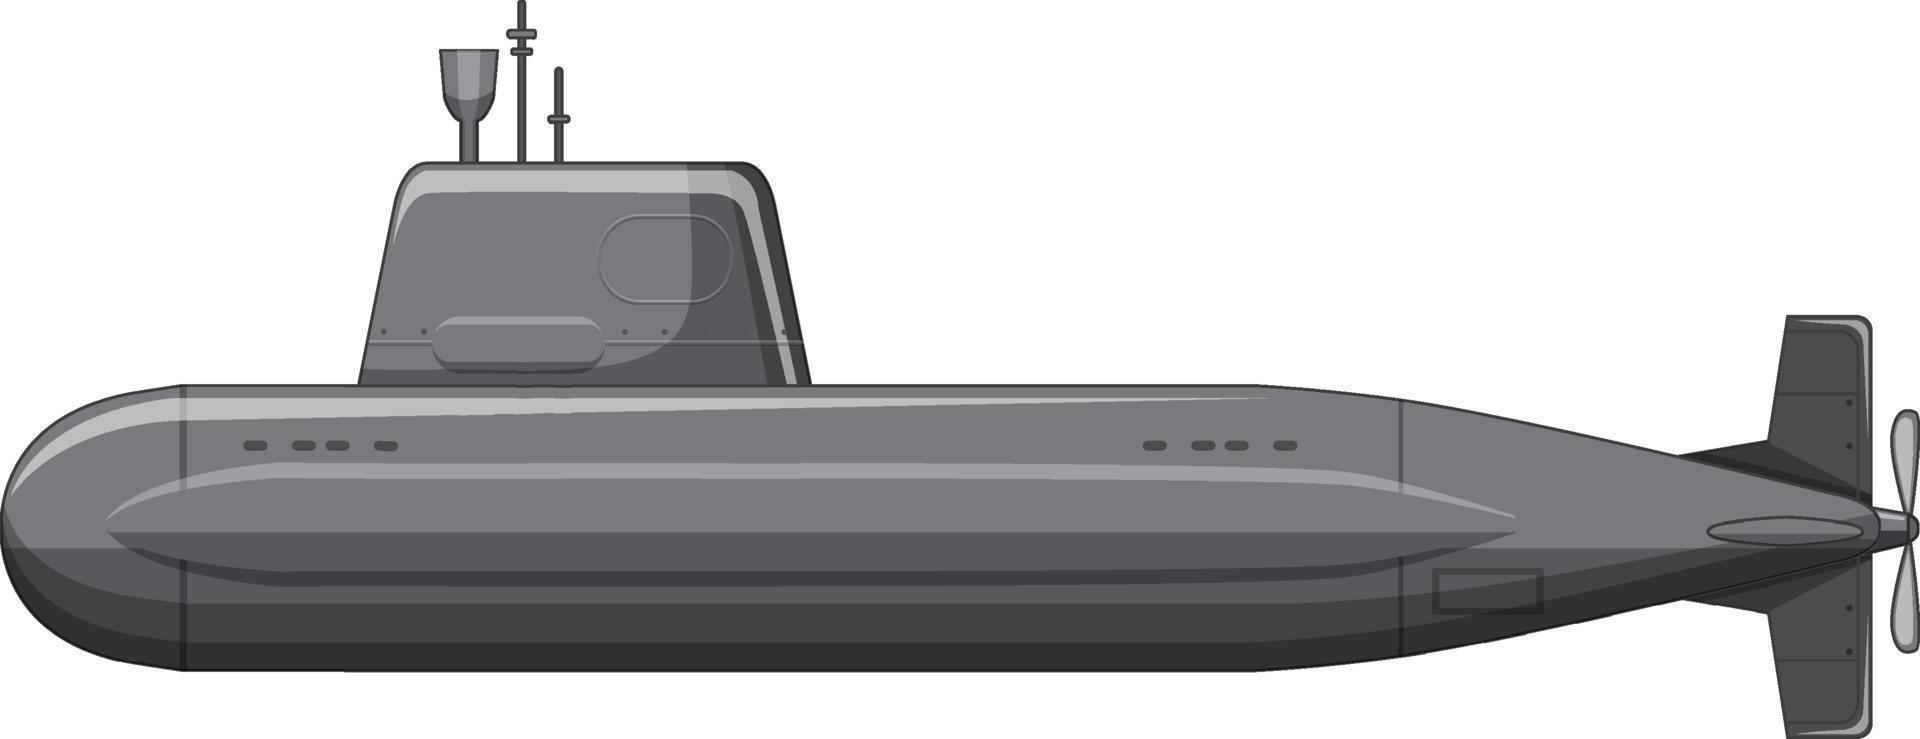 um submarino militar em fundo branco vetor